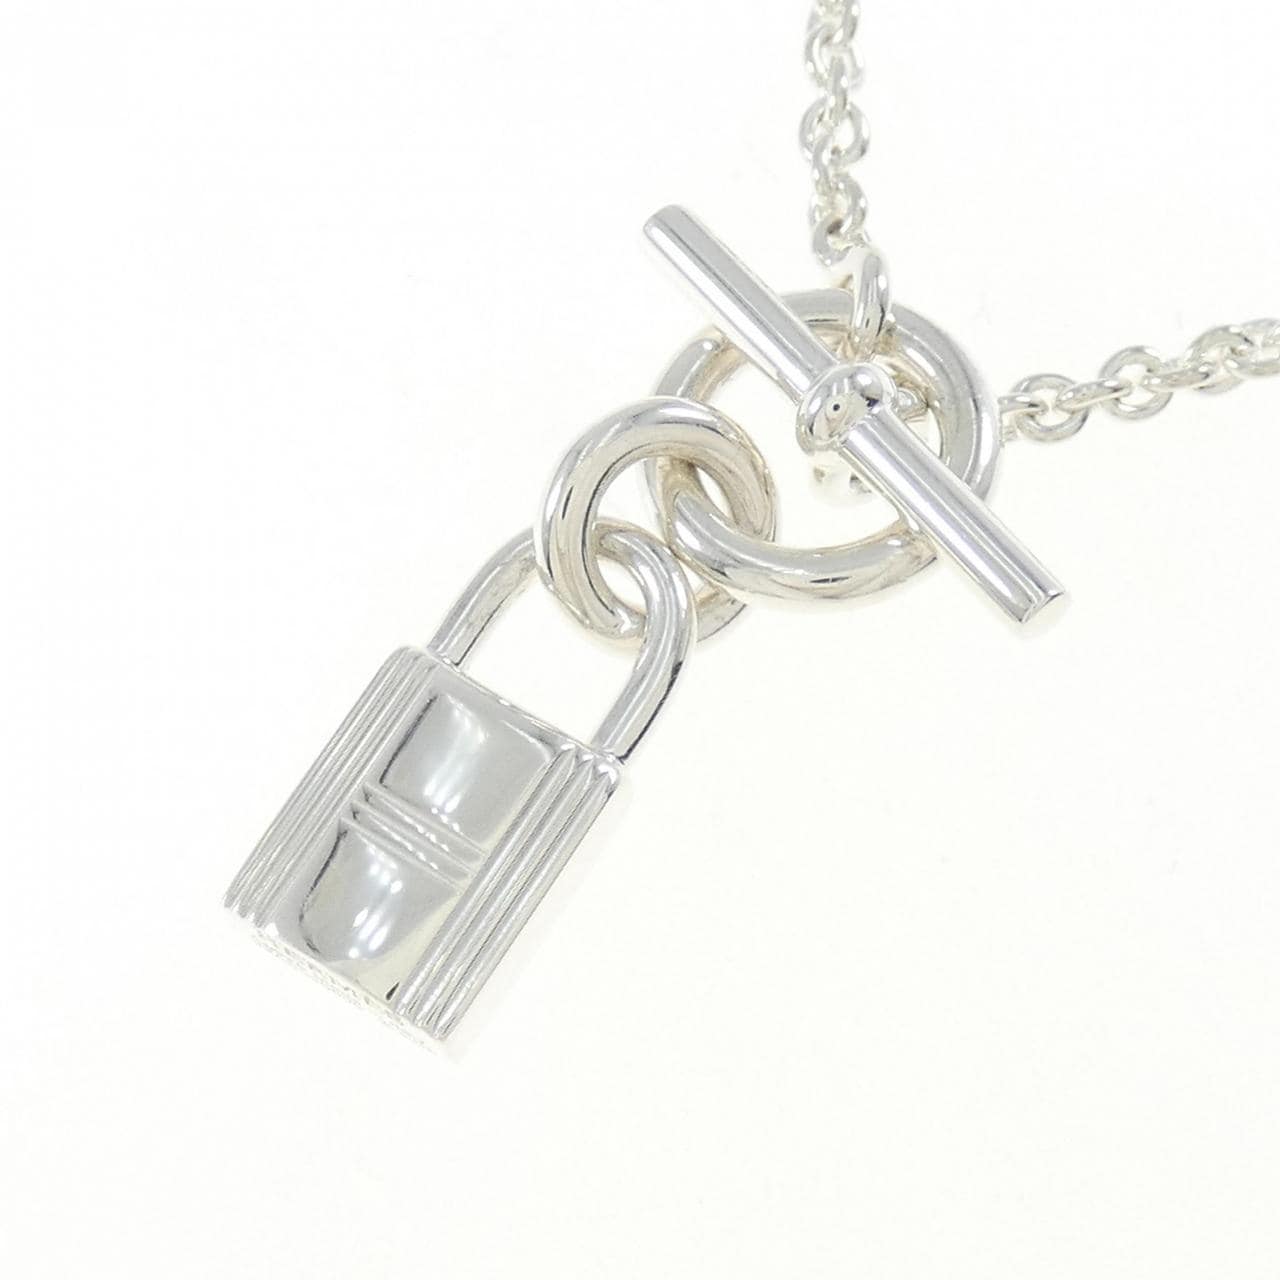 HERMES amulettes cadena necklace